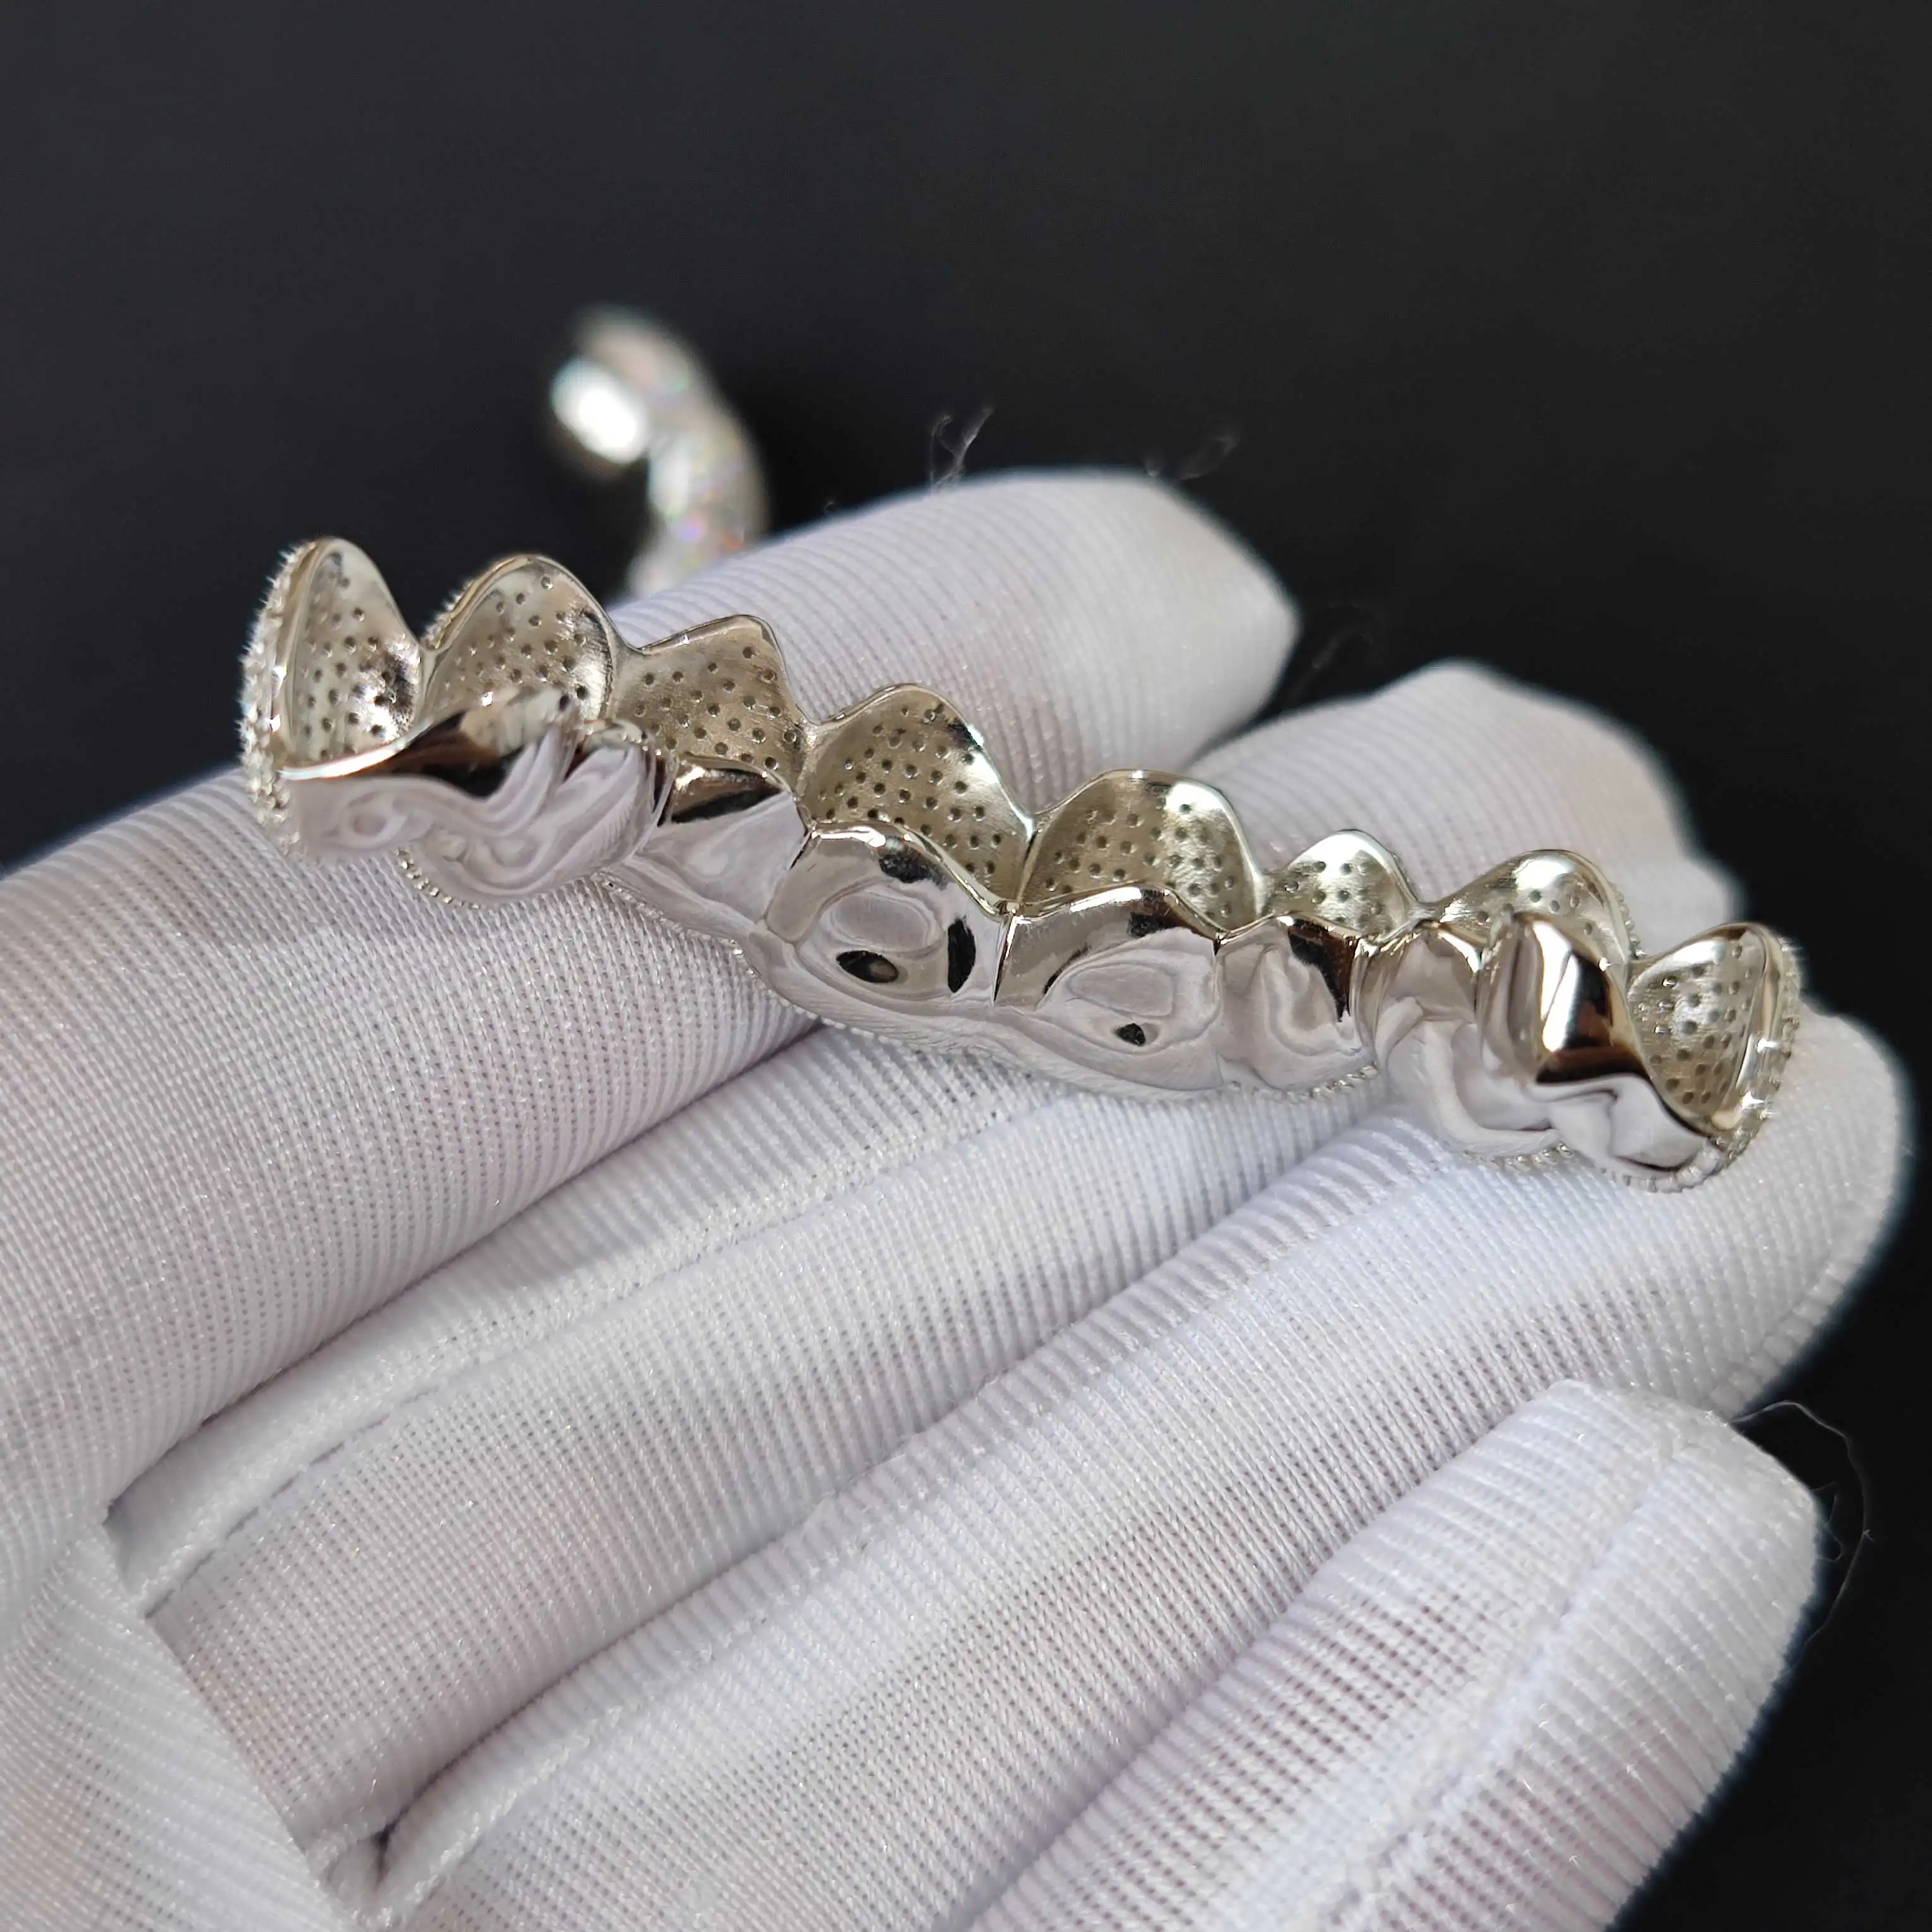 Vendita calda su misura personalizzato dente Sterling VVS Moissanite diamante Mens Iced Out Grillz decorazione dei denti